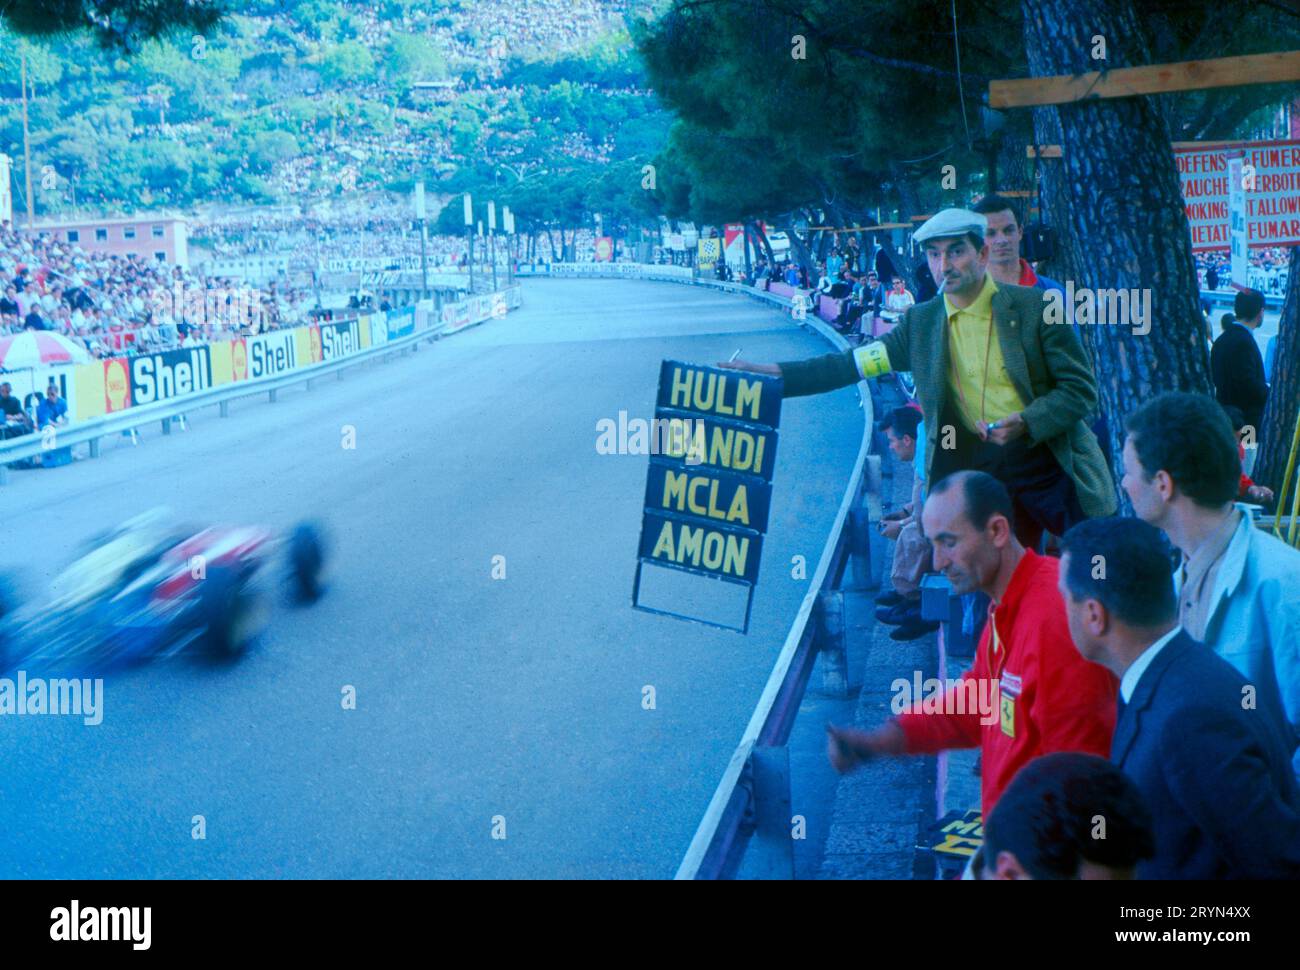 Gran Premio di Monaco 1967. Franco Lini, un reporter chiamato da Enzo Ferrari come team manager, segnala la posizione di Bandini dietro Hulme e davanti a MCL Foto Stock